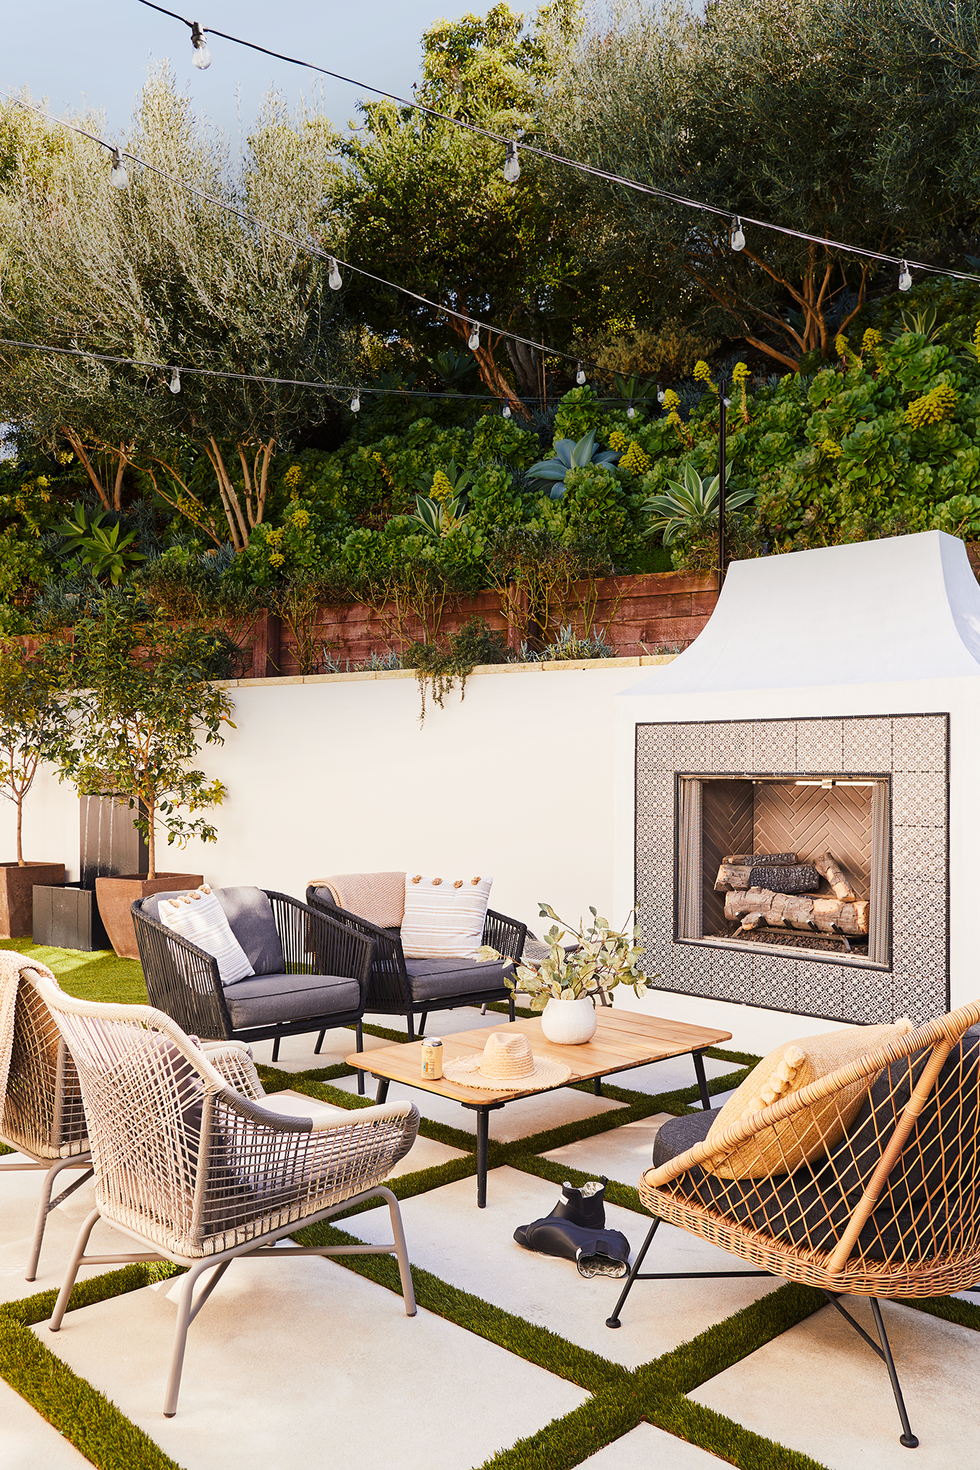 5 Spectacular Outdoor Wall Decor Ideas that You'll Love  Outdoor wall decor,  Garden wall decor, Vertical pallet garden